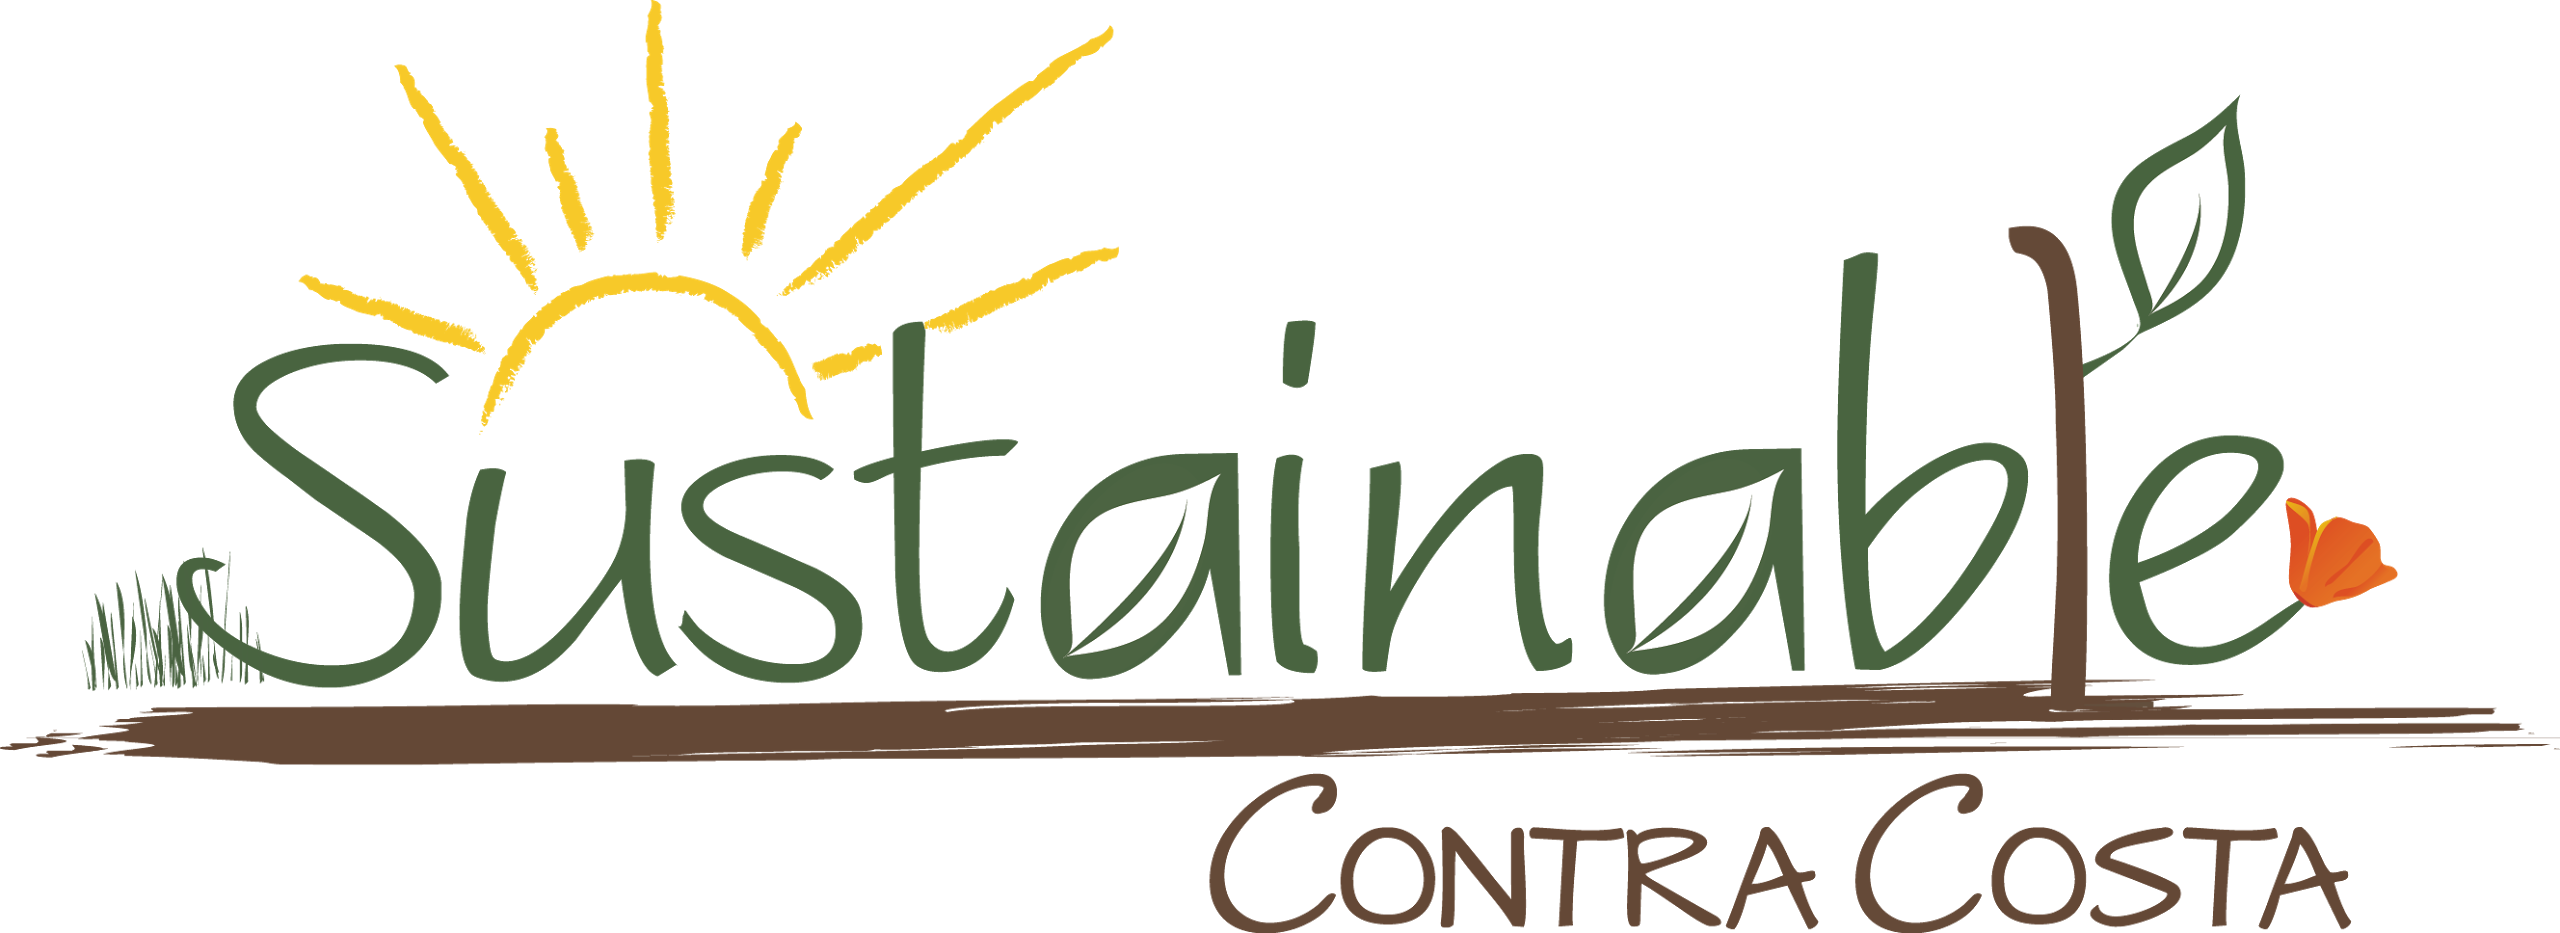 ロゴは、持続可能なコントラコスタは、庭の土壌、植物、花、太陽の光のイラストを示していると言います